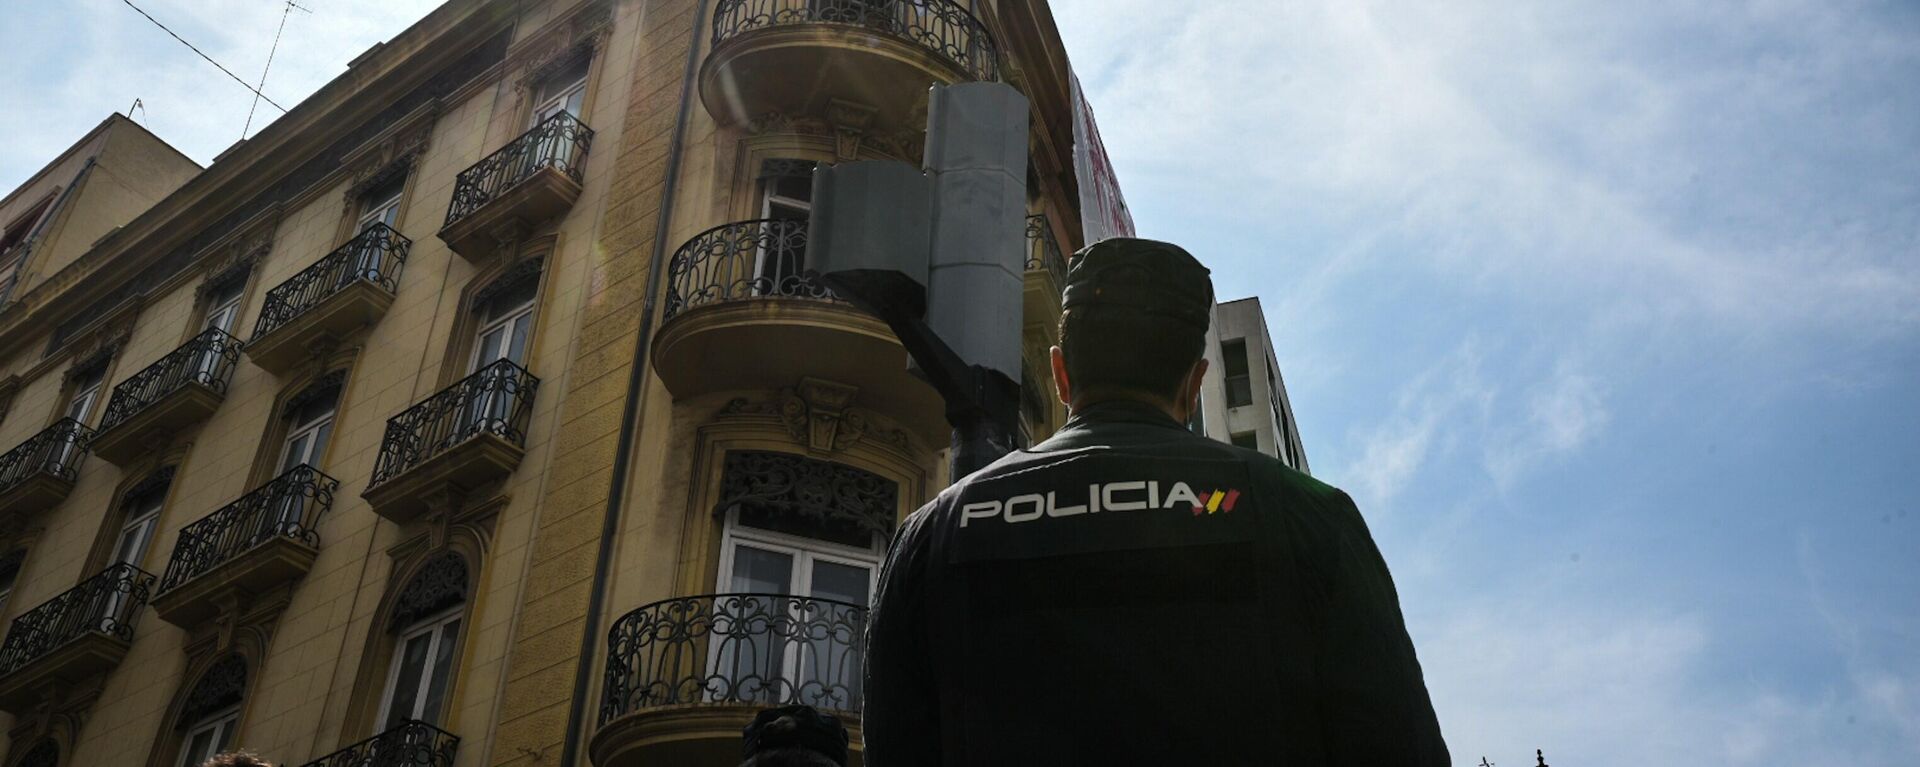 Un agente vigila un edificio 'okupado' en la ciudad española de Valencia (referencial)  - Sputnik Mundo, 1920, 03.09.2021